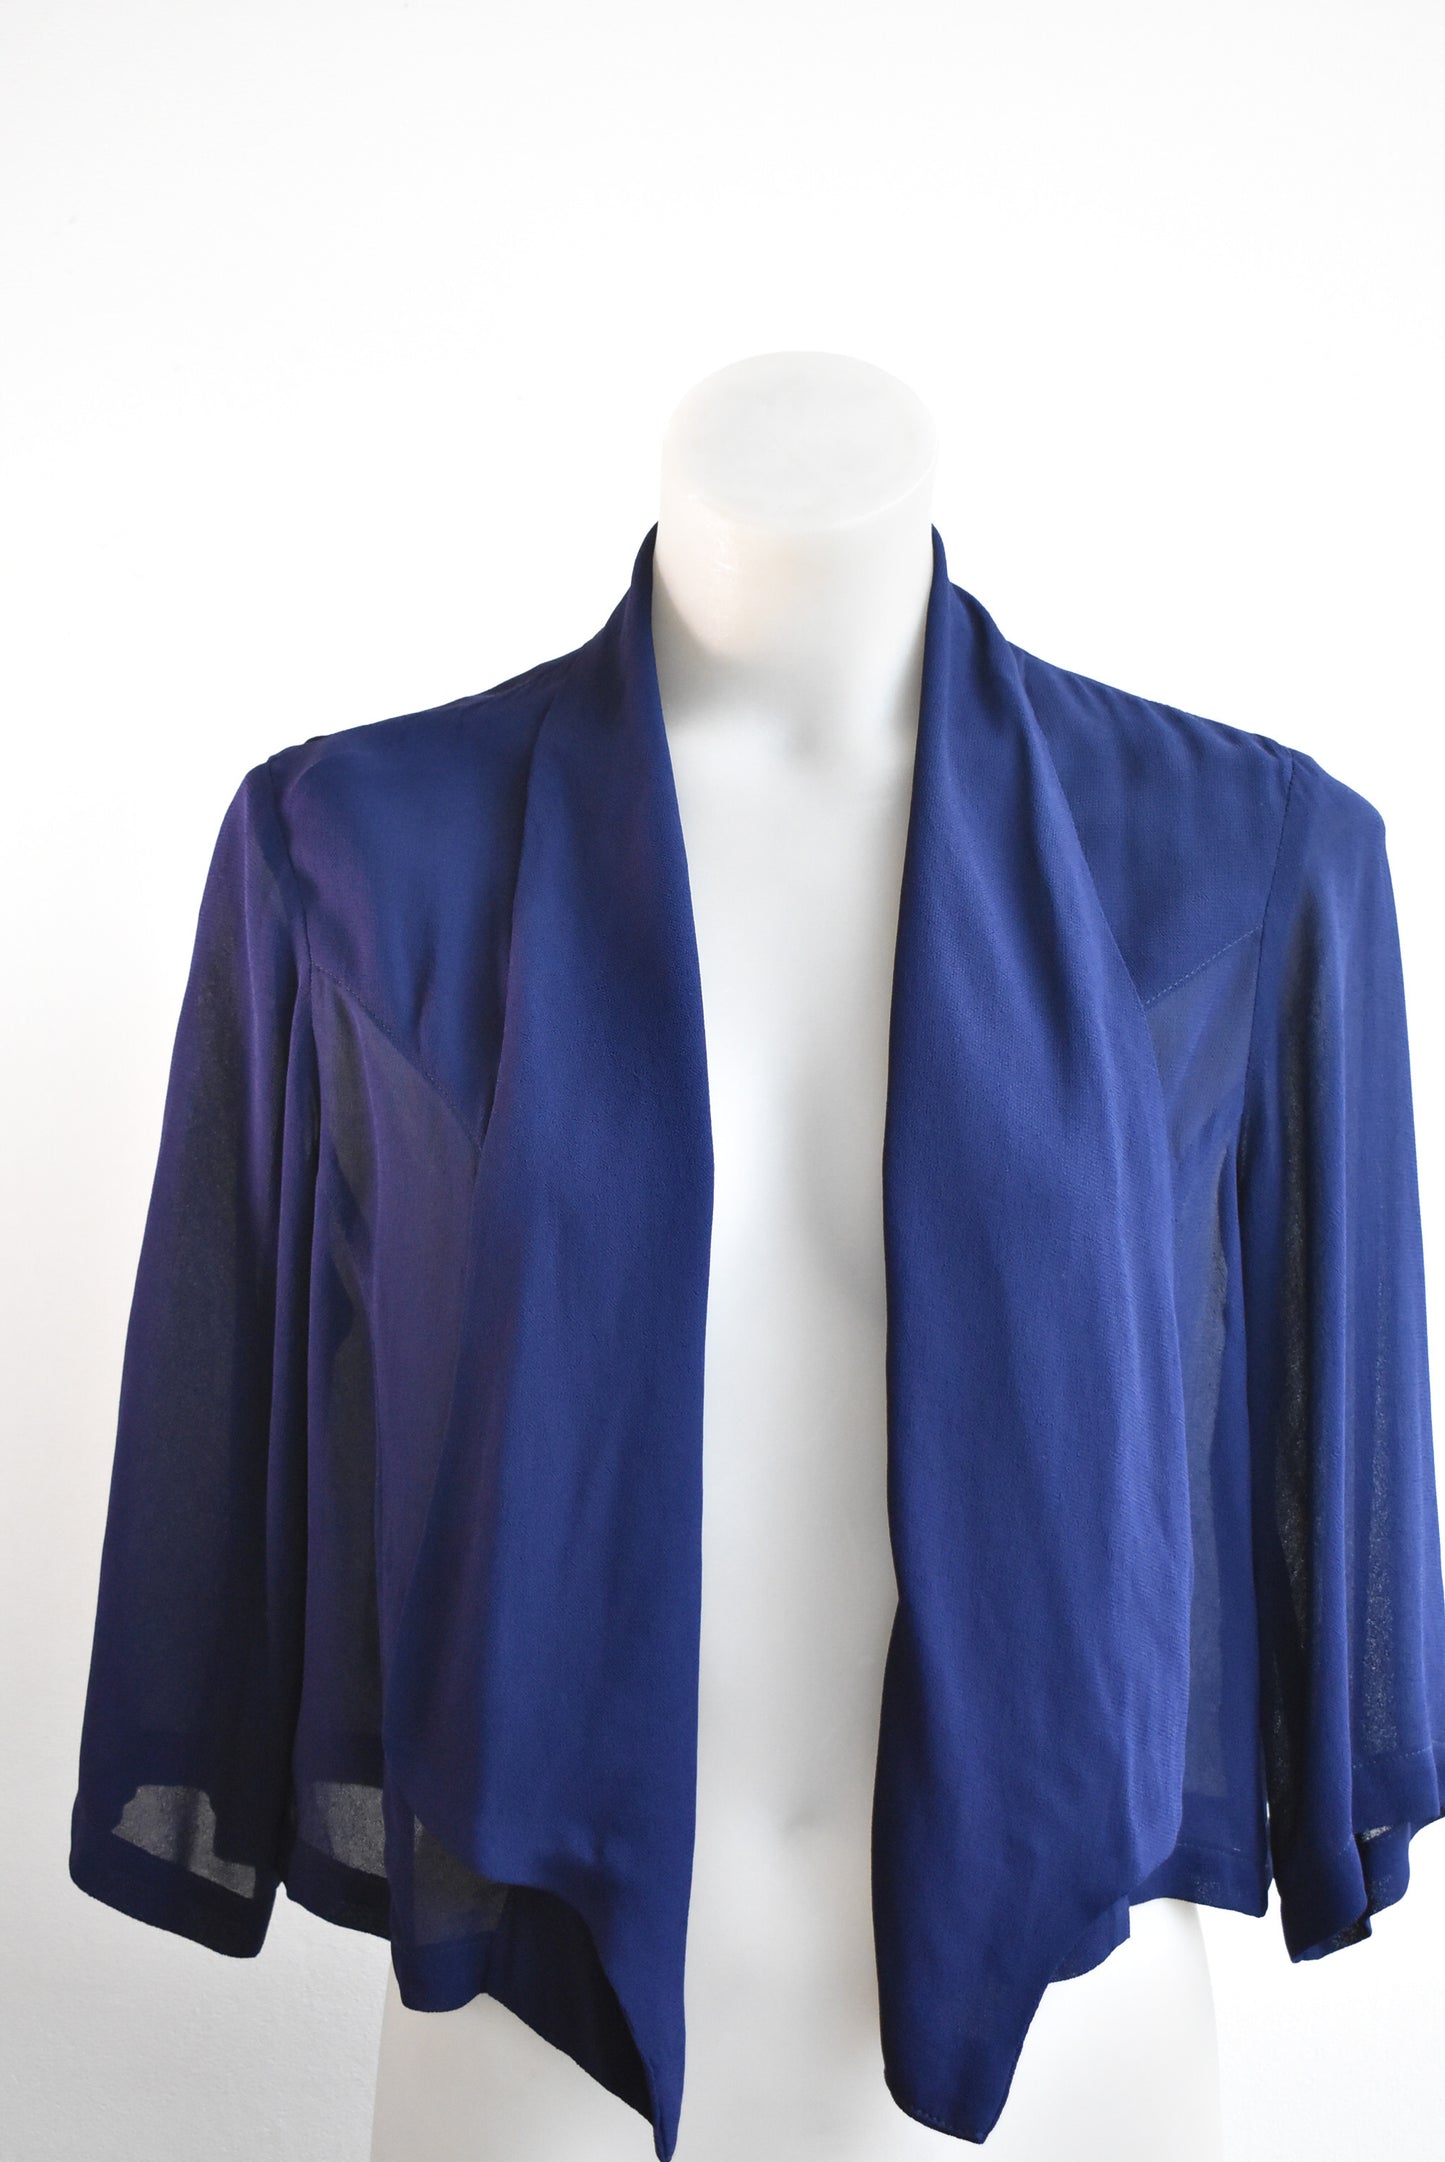 Charmaine Reveley blue jacket, size 10